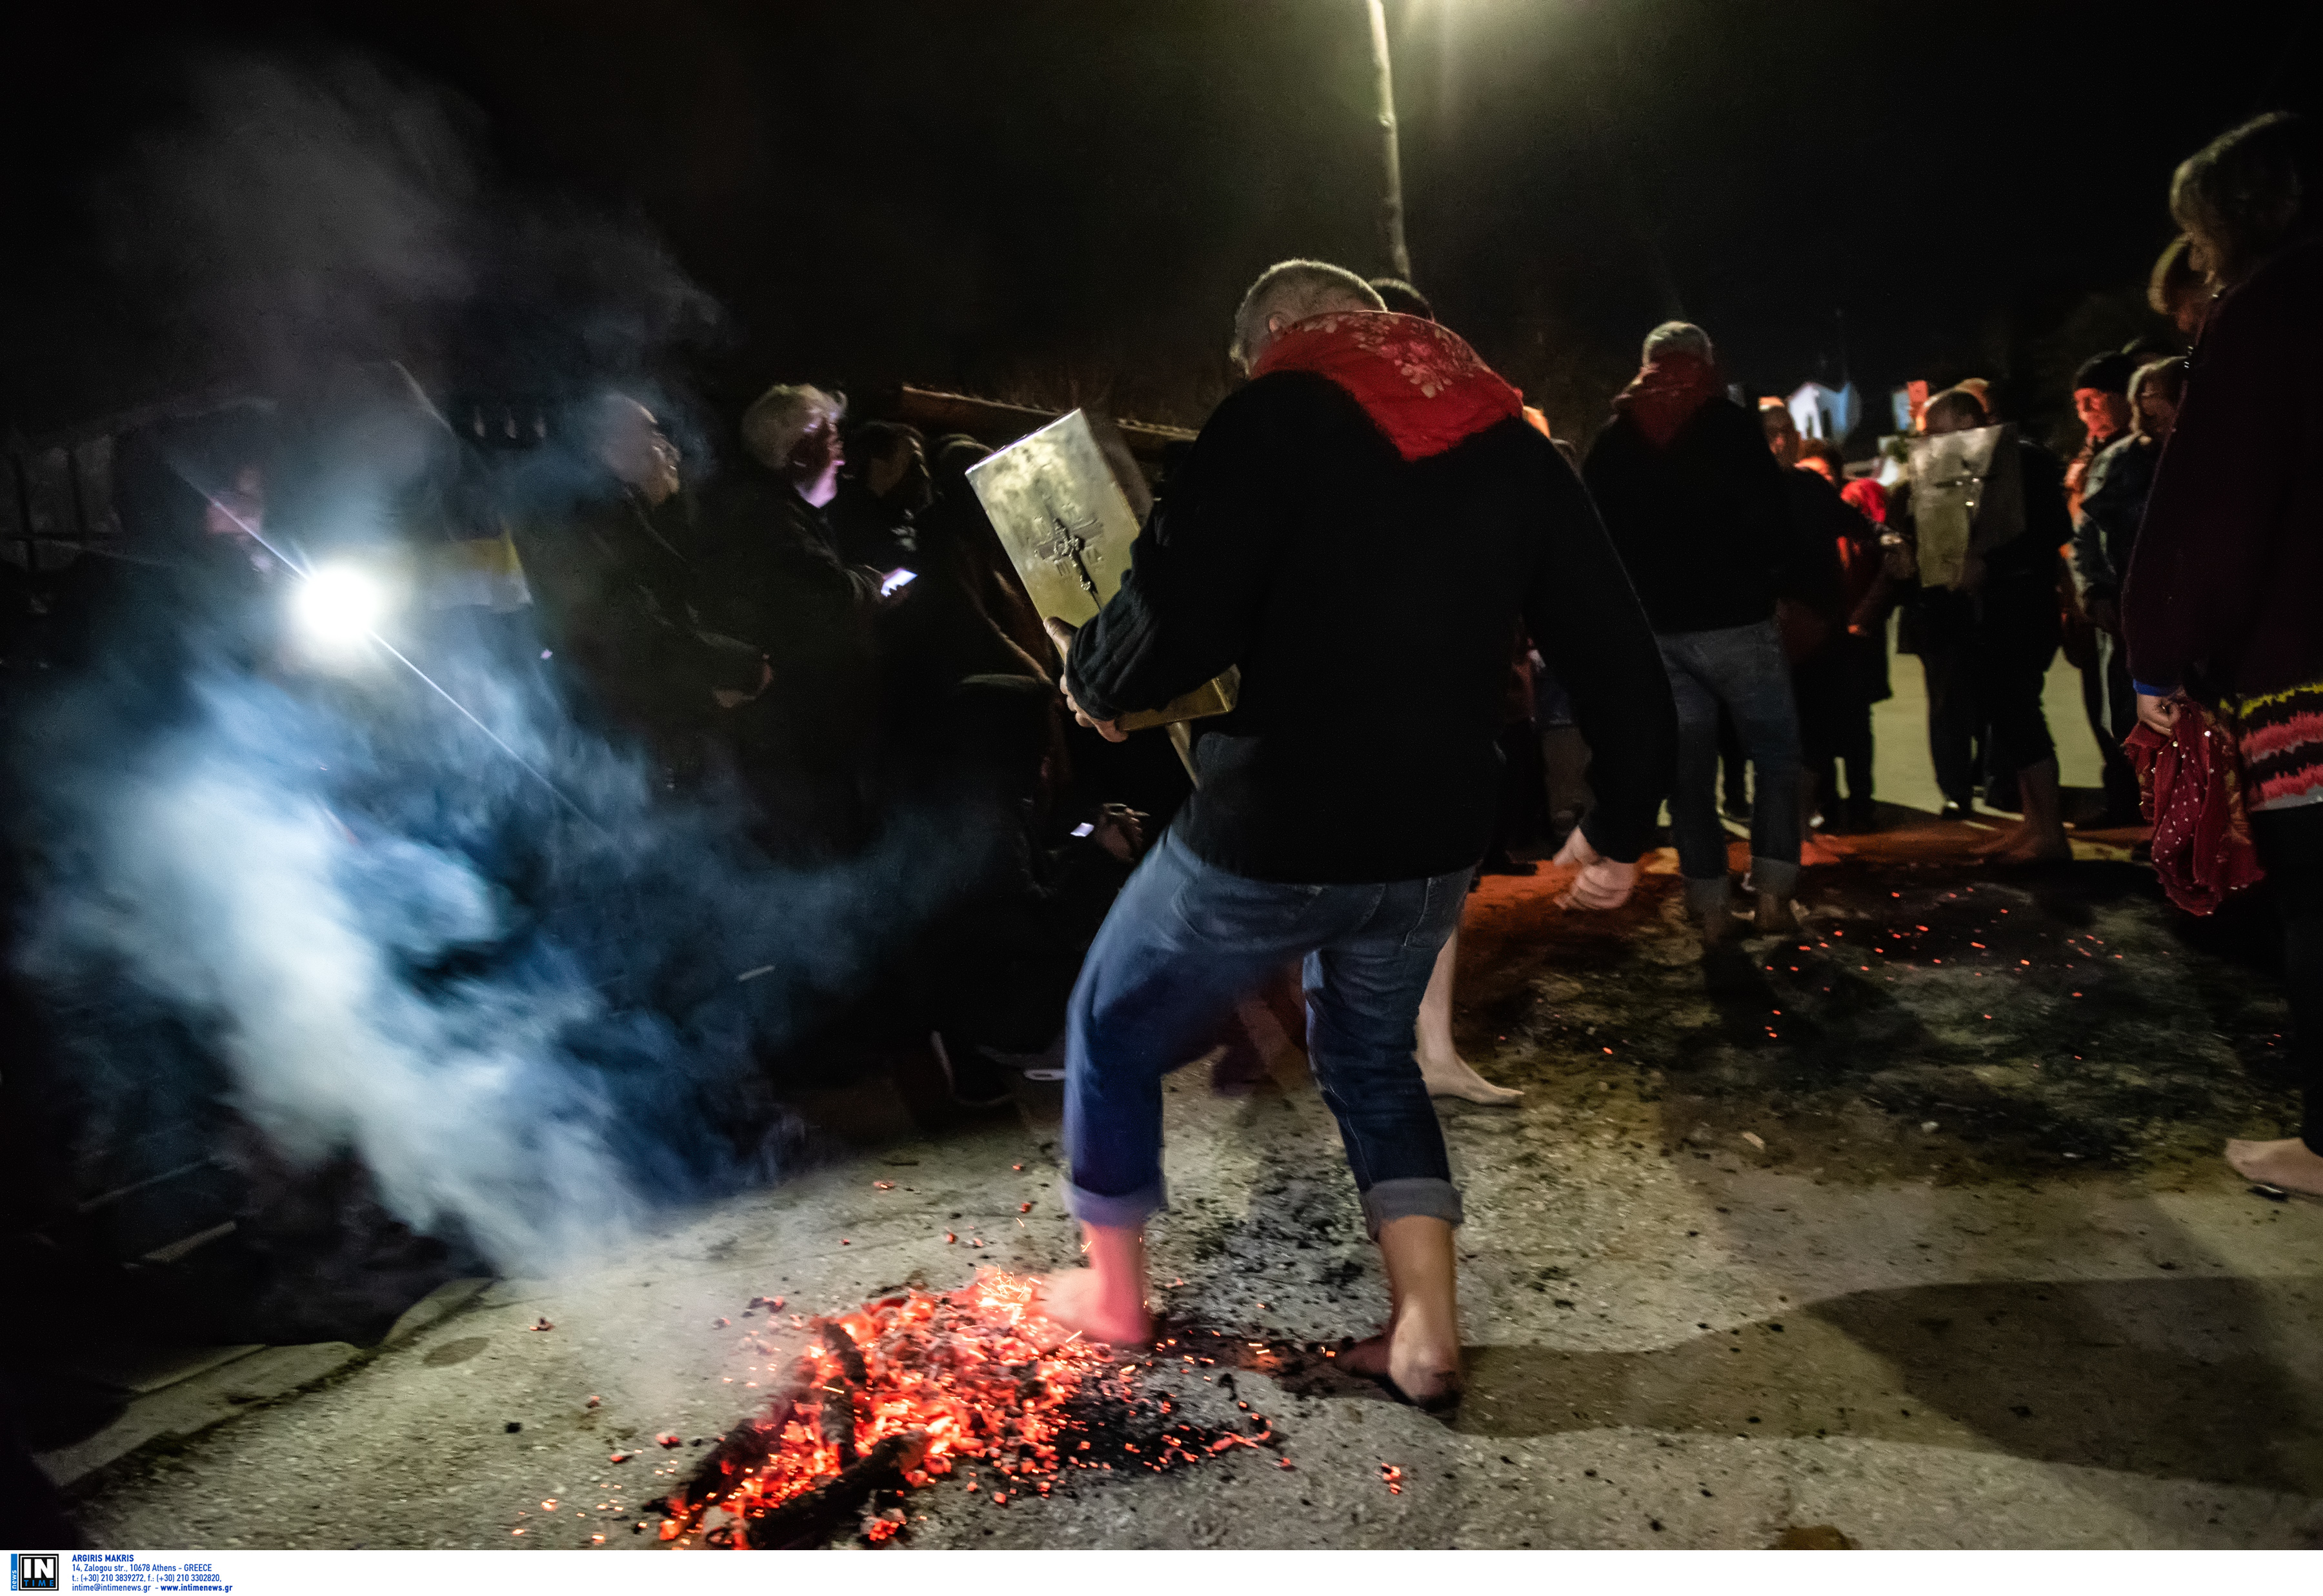 Θεσσαλονίκη: Με γυμνά πόδια στα κάρβουνα – Τα Αναστενάρια του χειμώνα «ζέσταναν» ψυχές στον Λαγκαδά [pics]